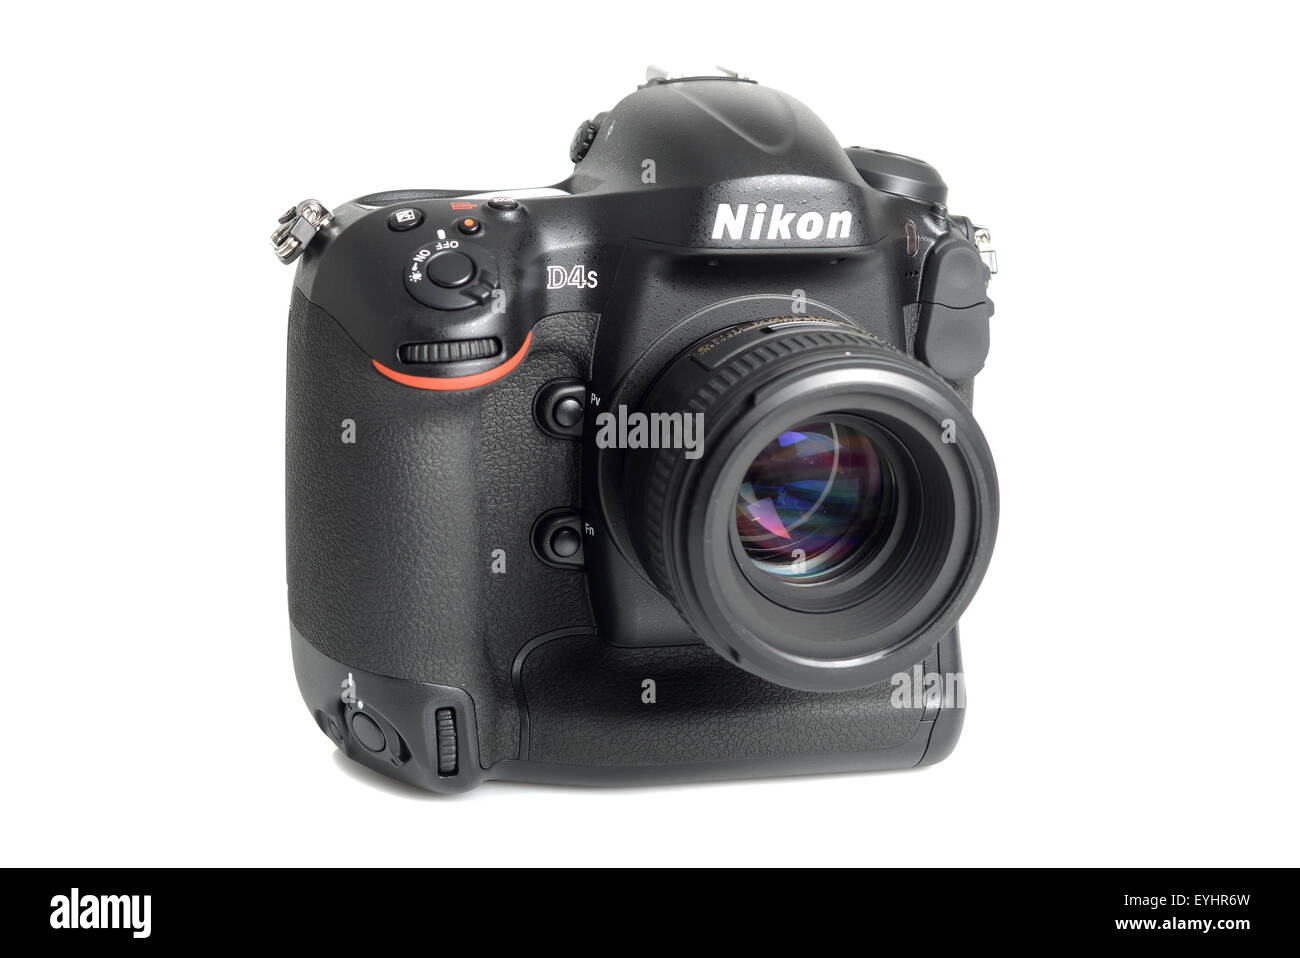 Appareil photo Nikon D4s sur fond blanc Banque D'Images